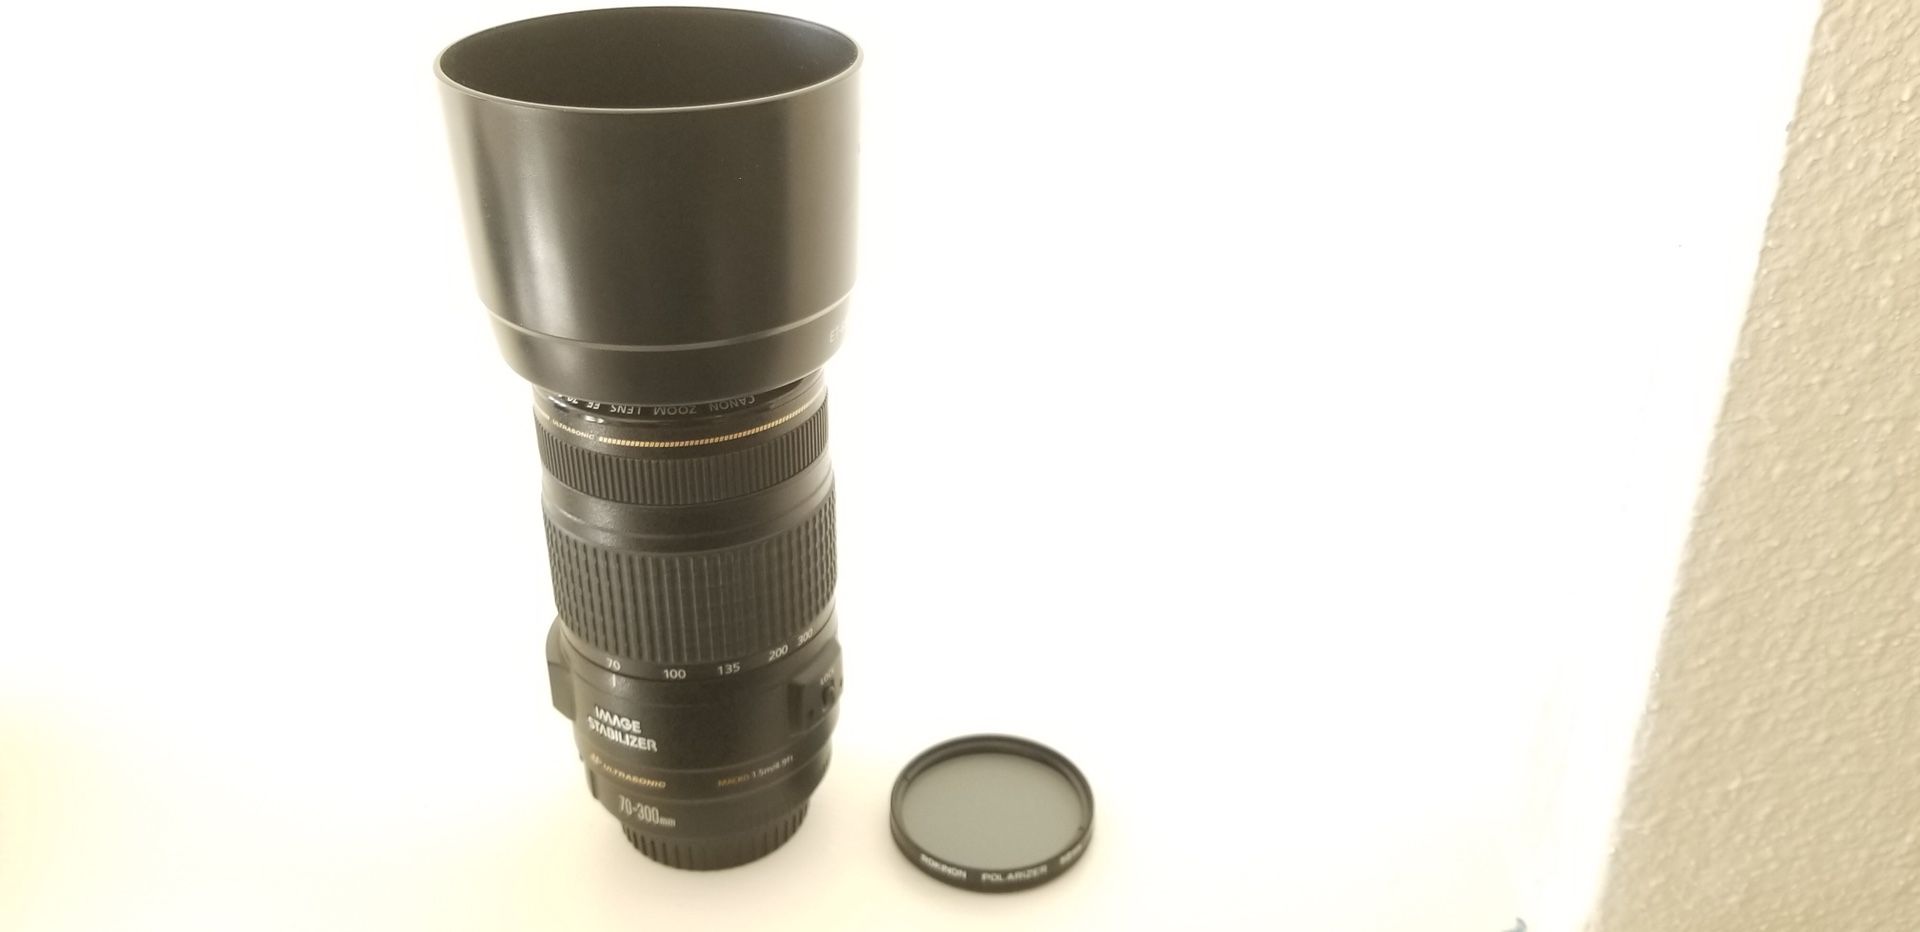 Canon 70-300mm IS USM DSLR lens (excellent condition)